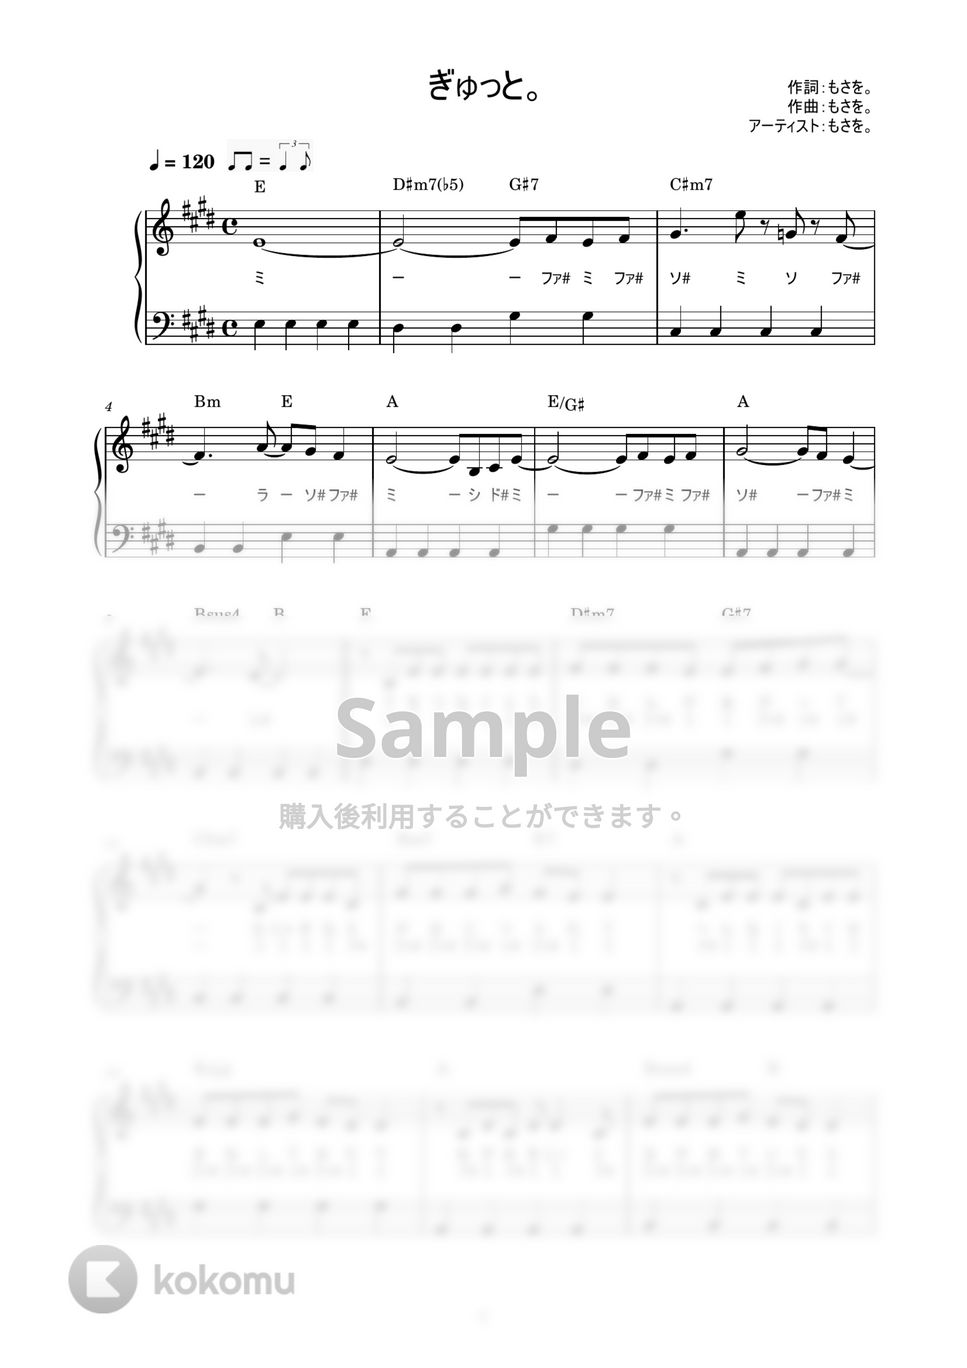 もさを。 - ぎゅっと。 (かんたん / 歌詞付き / ドレミ付き / 初心者) by piano.tokyo